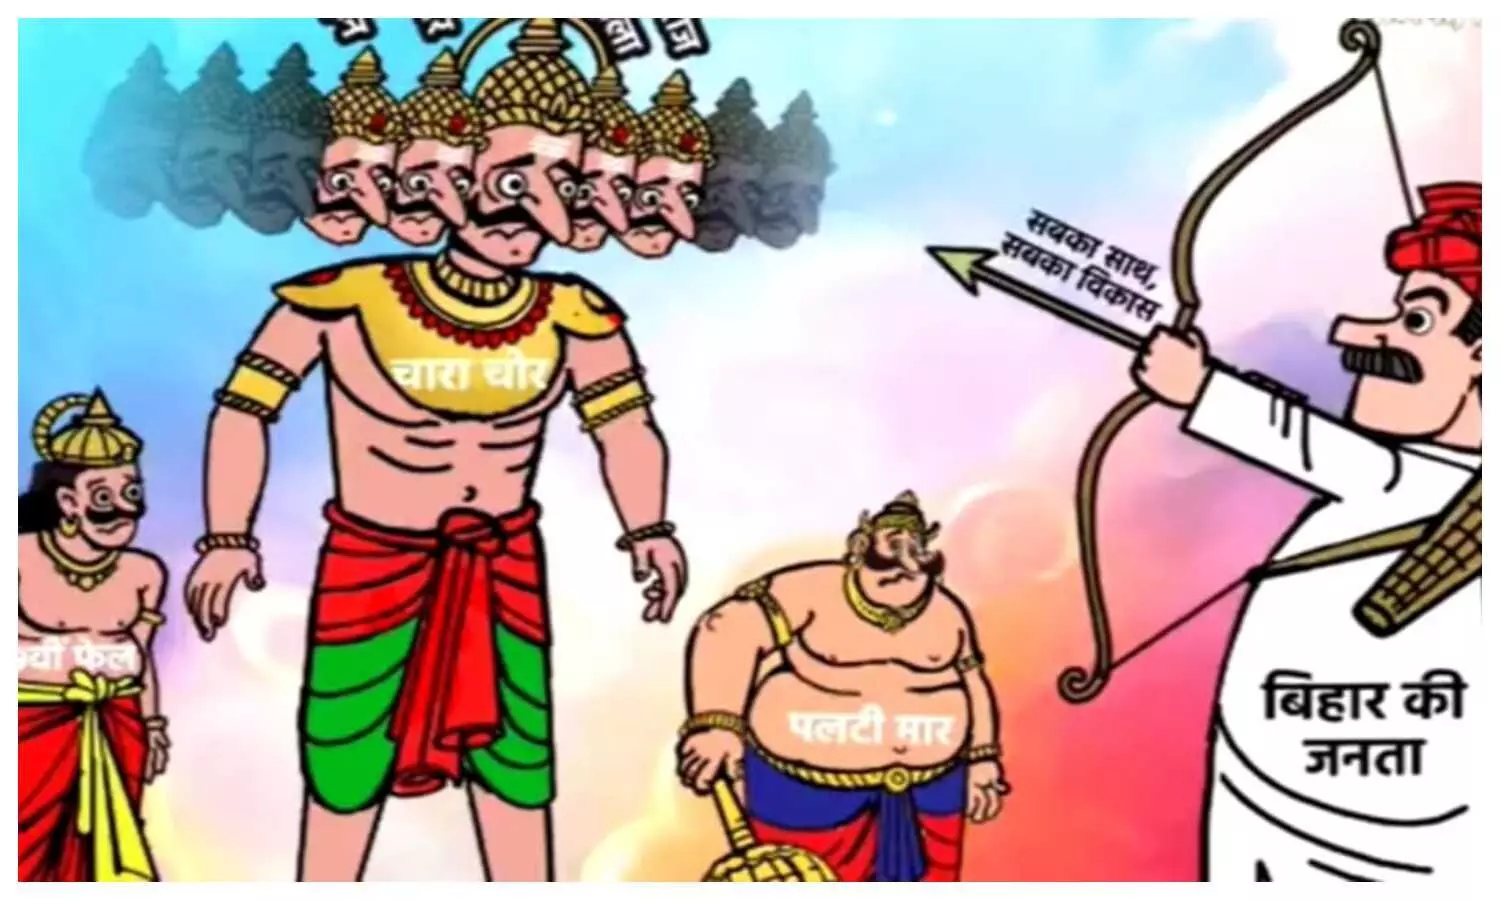 Samrat Chaudhary Animated Video